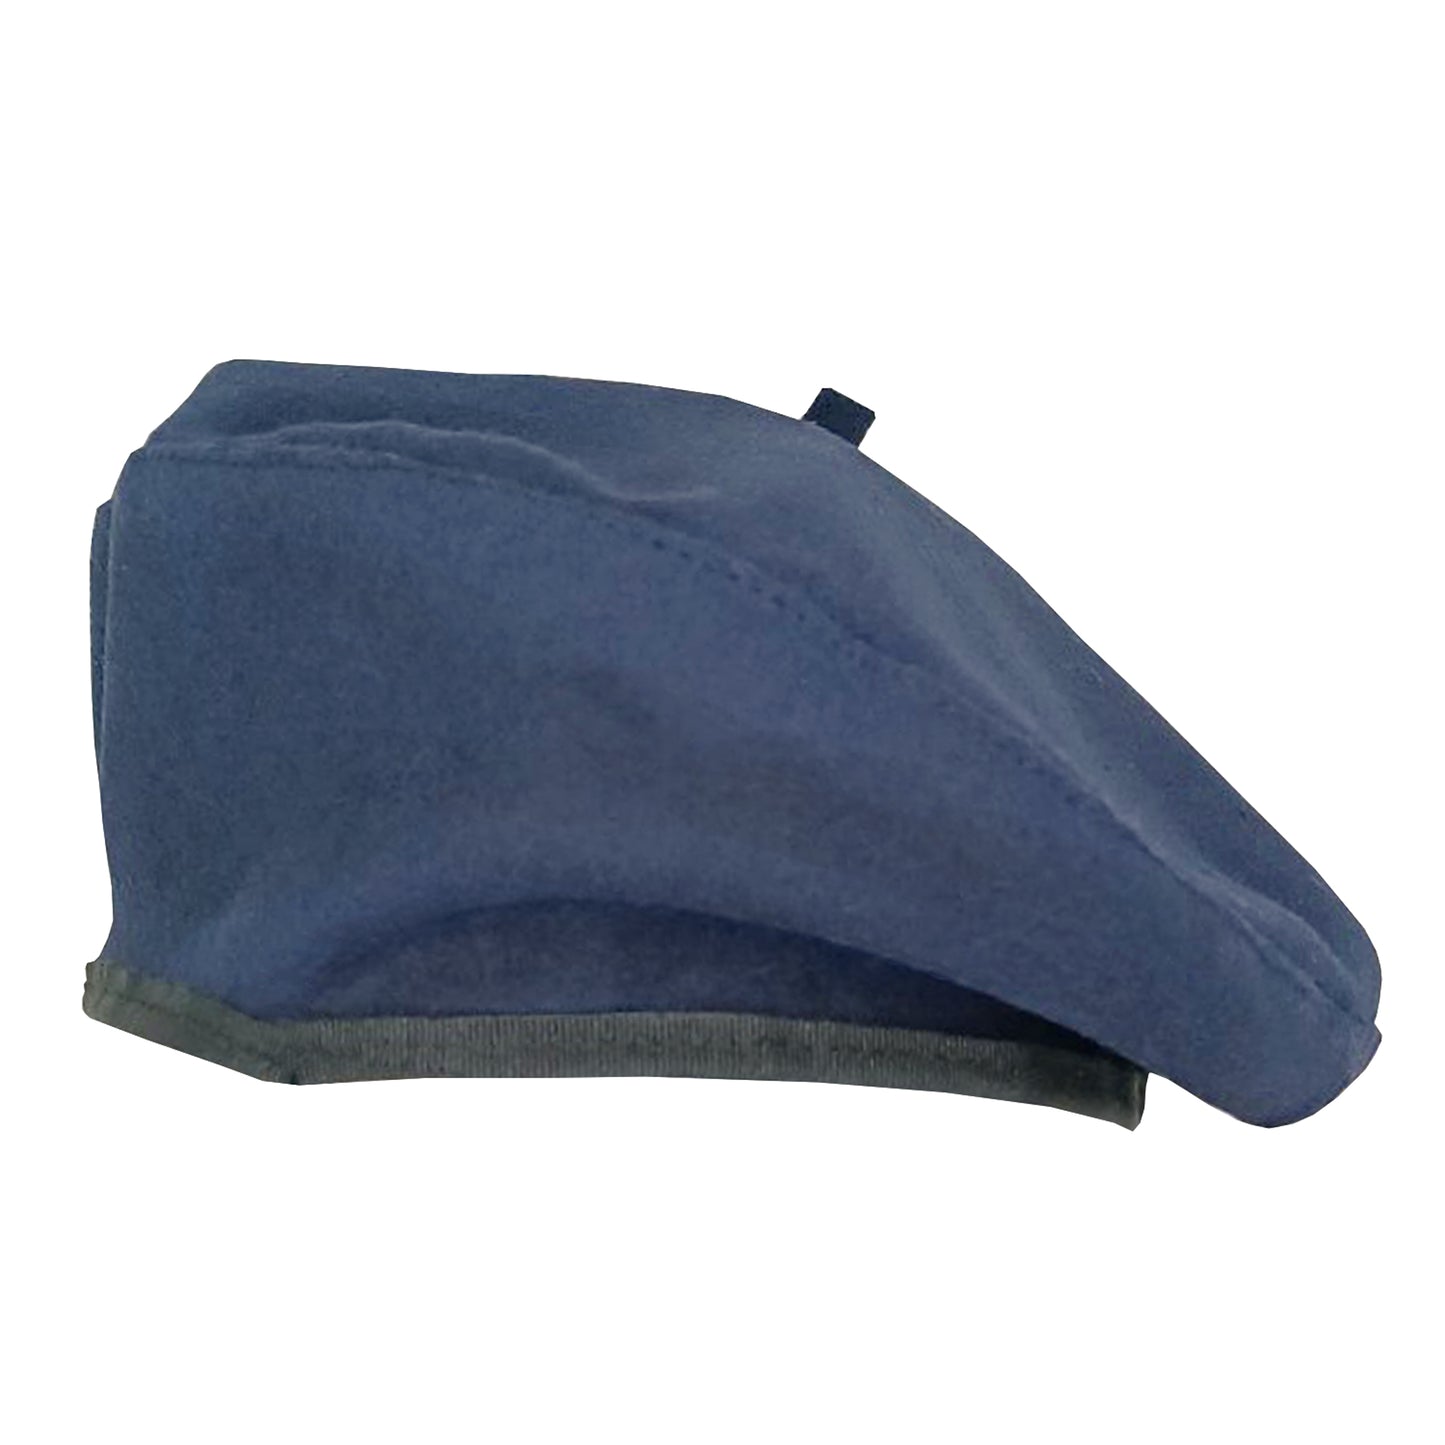 Γαλλικός Μπερές (beret) Μπλε 1049 NAVY